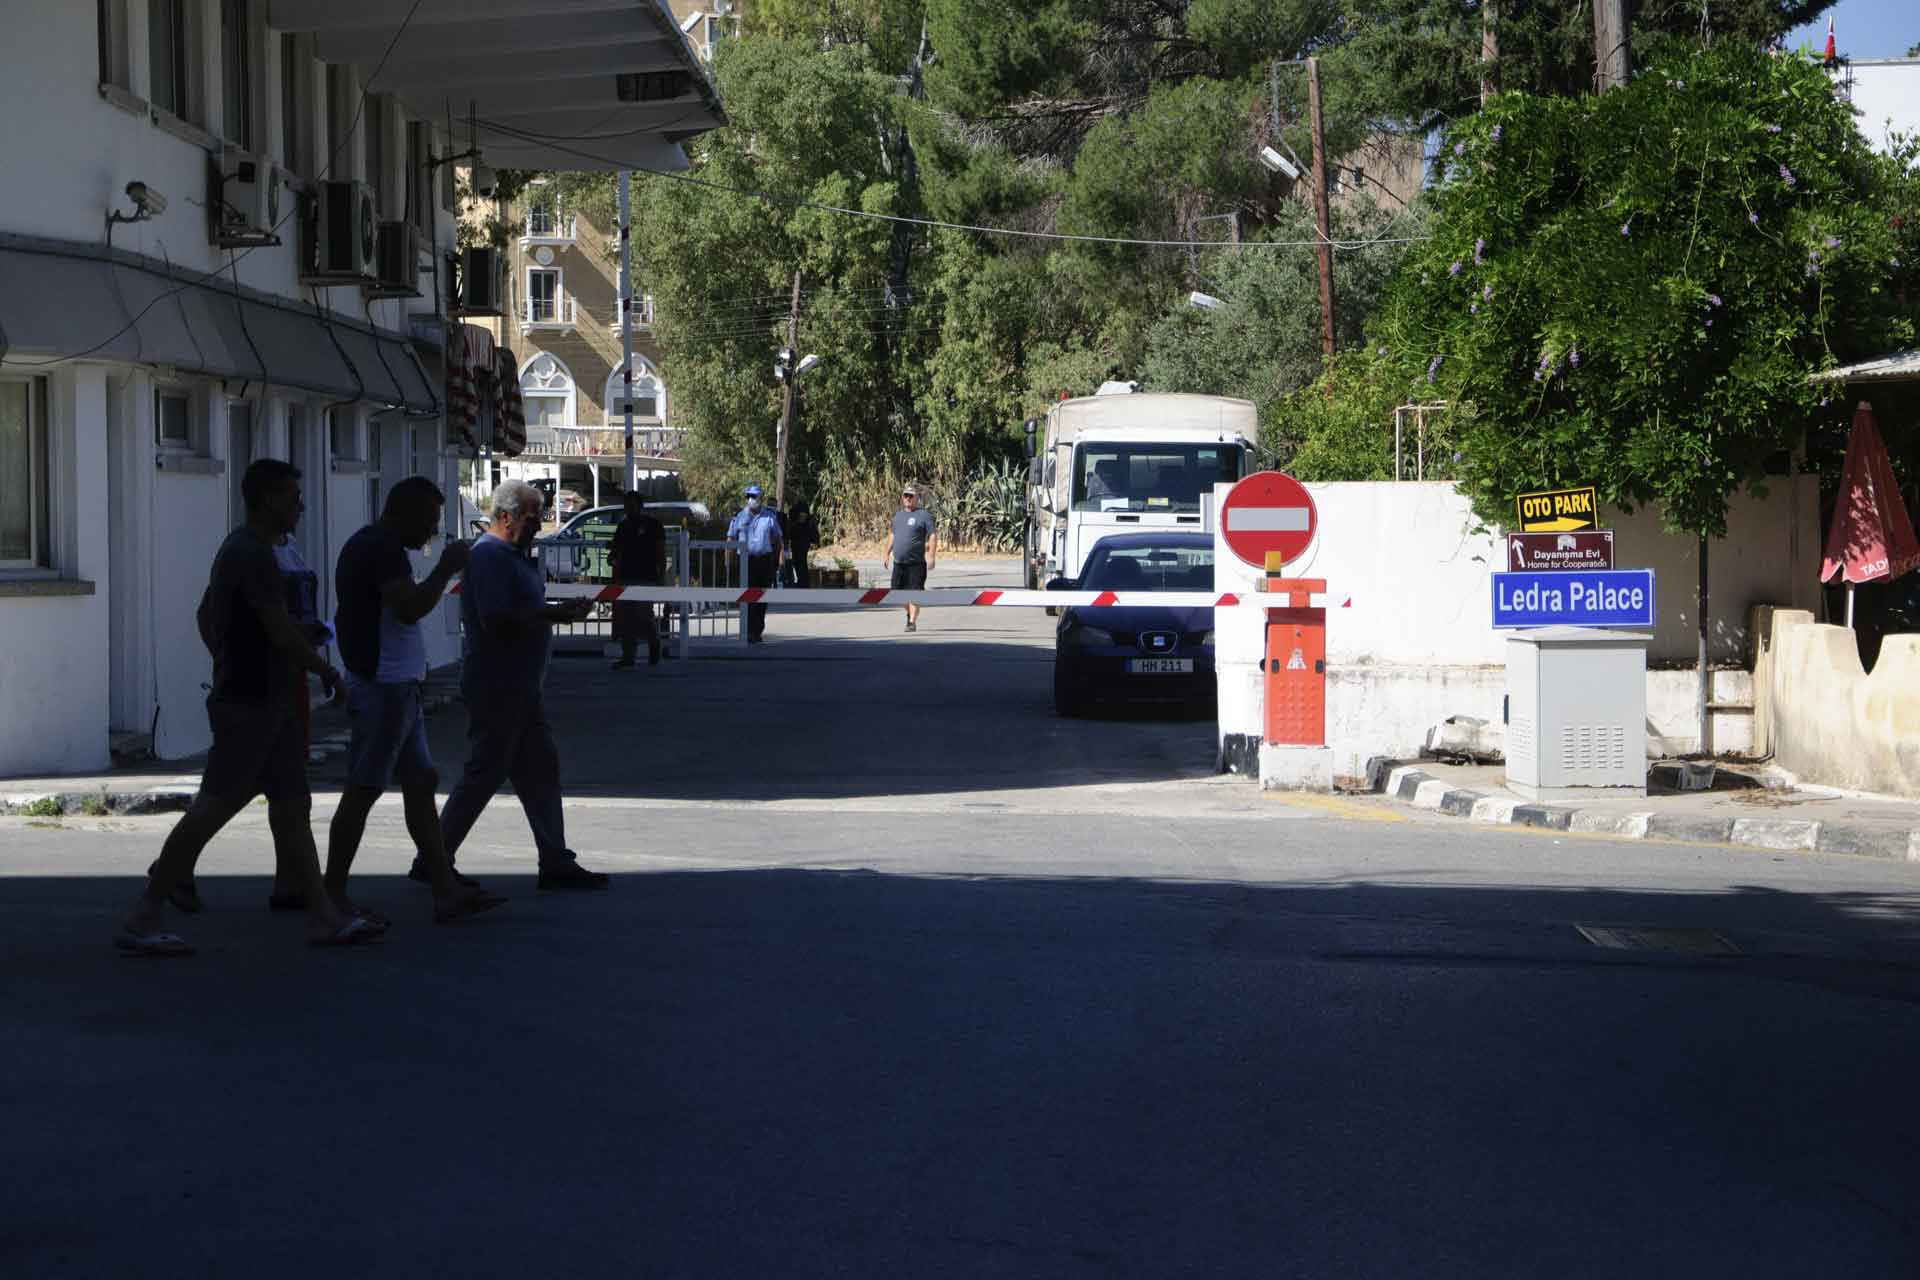 Ledra Palace barikatında polisin dur uyarısına rağmen Kuzey’e geçen şahıs tutuklandı